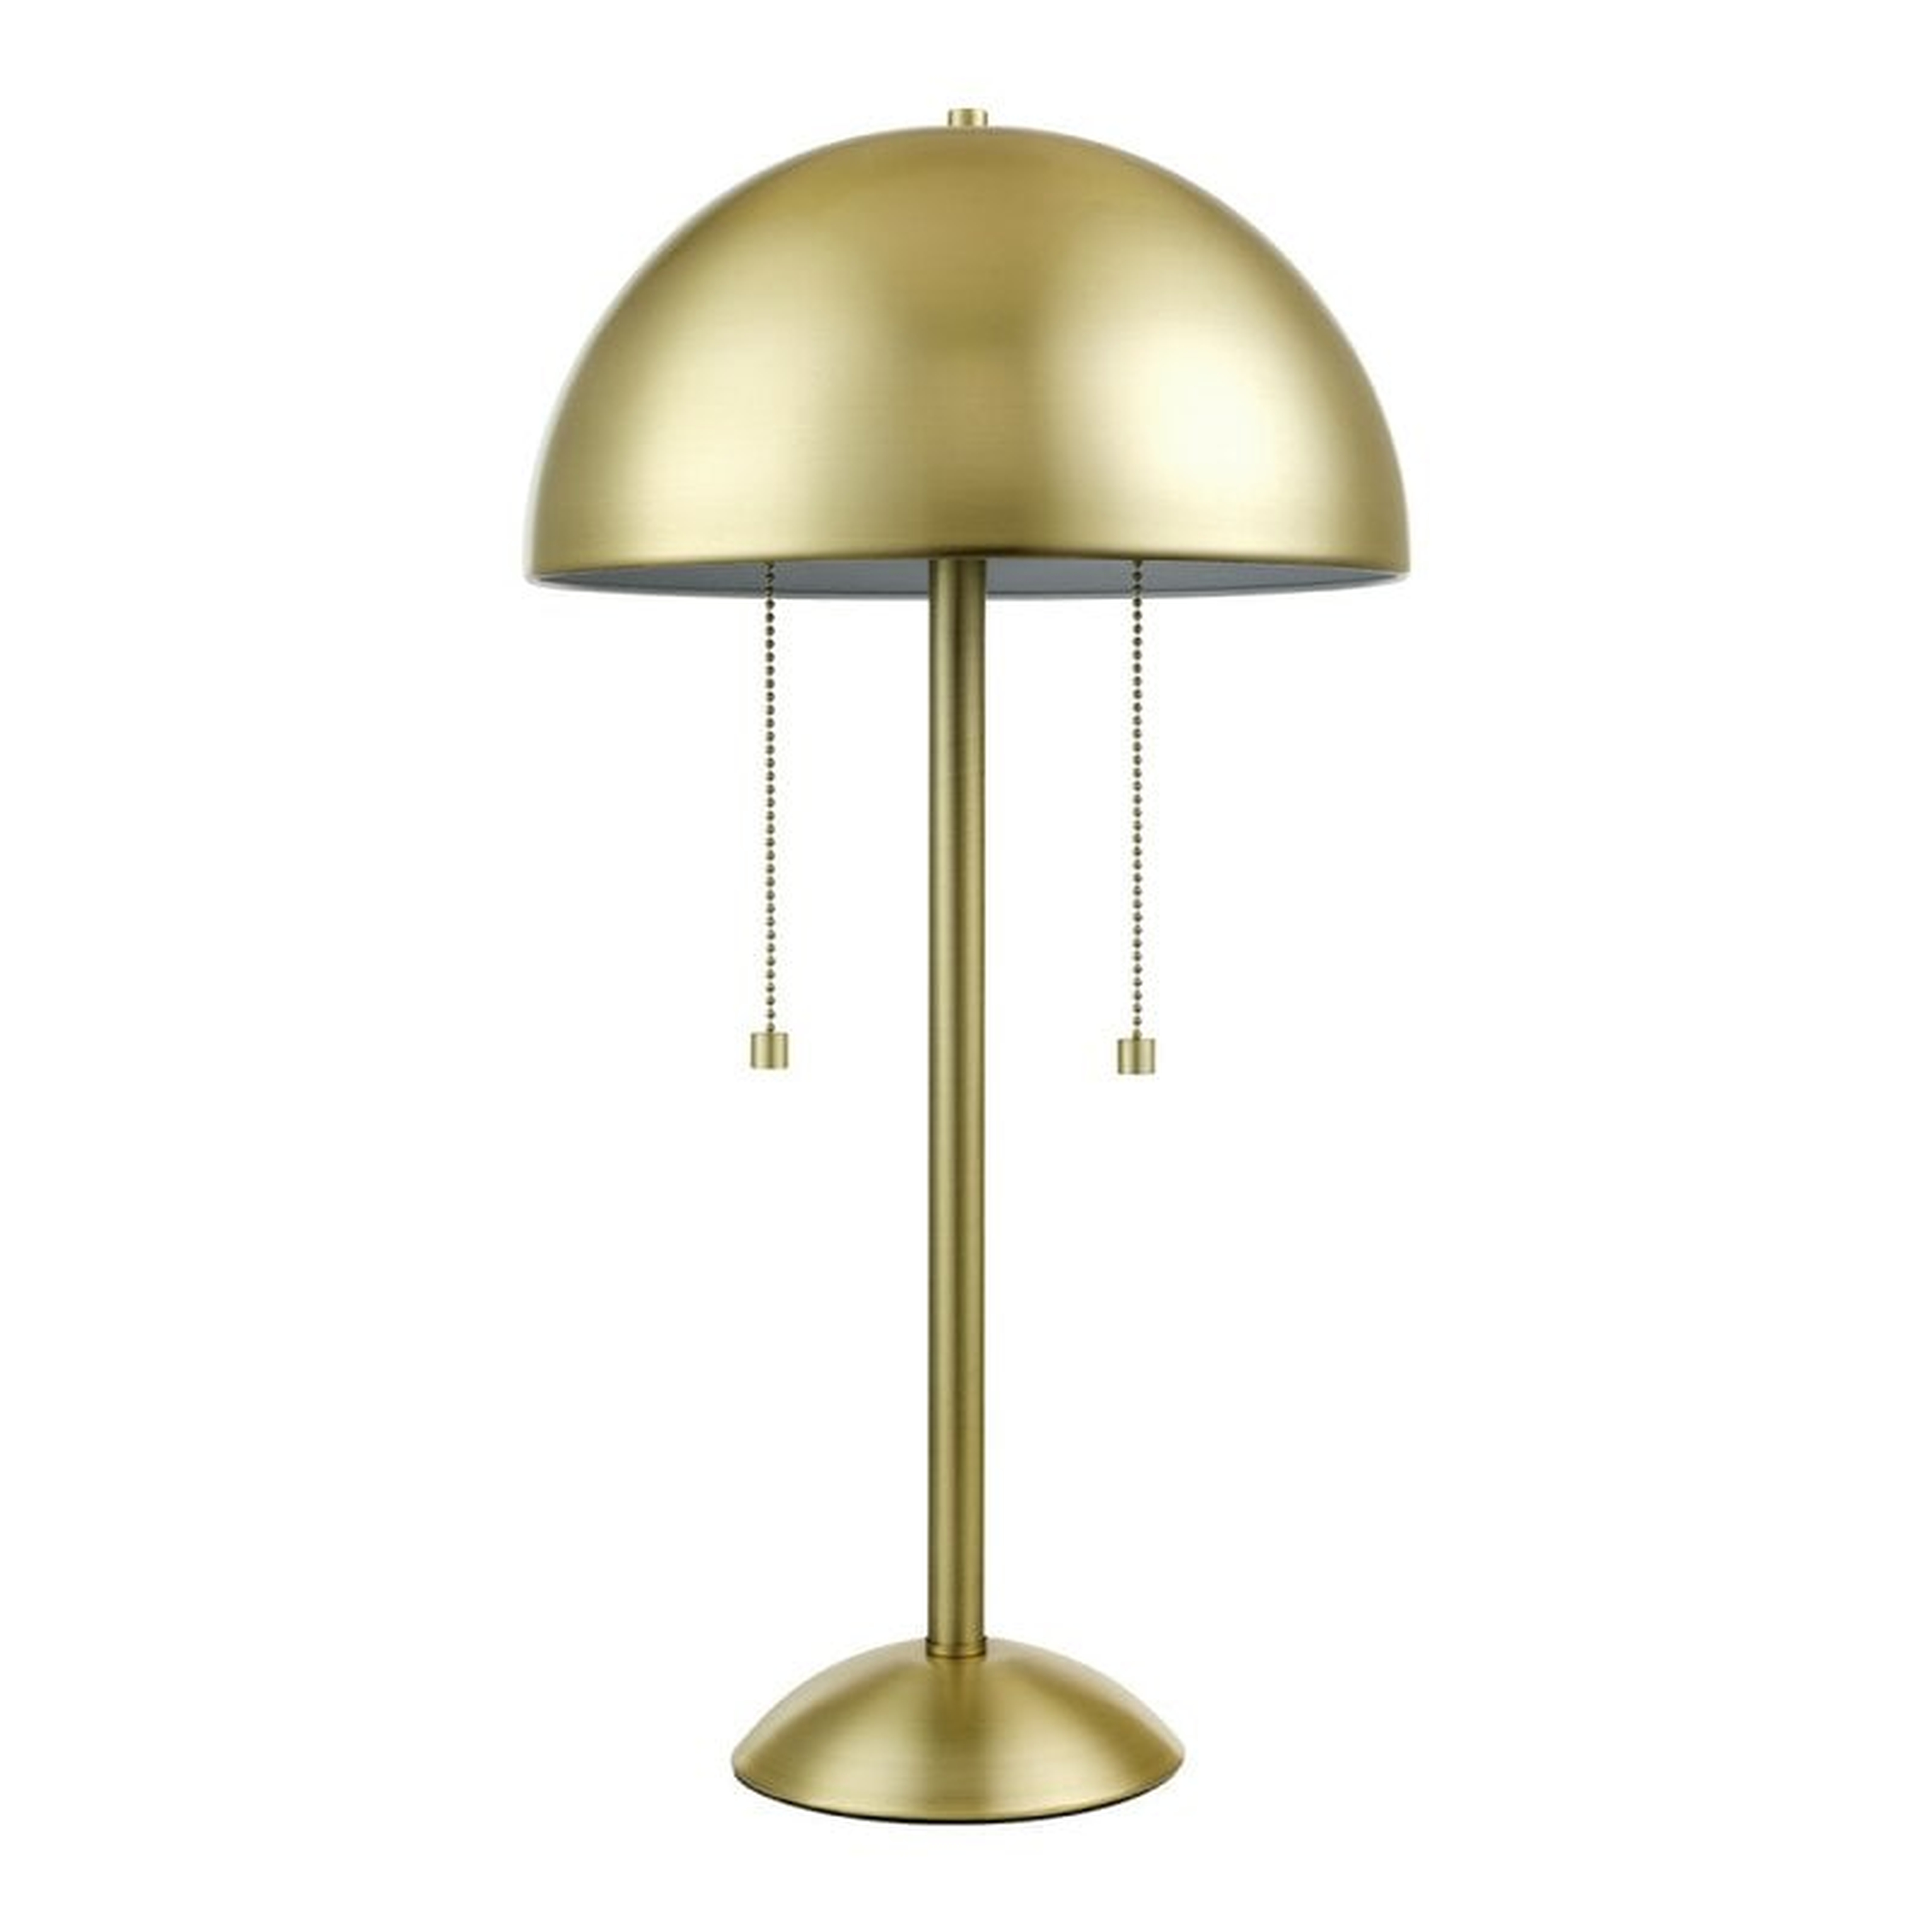 Revere 21" Table Lamp - Wayfair